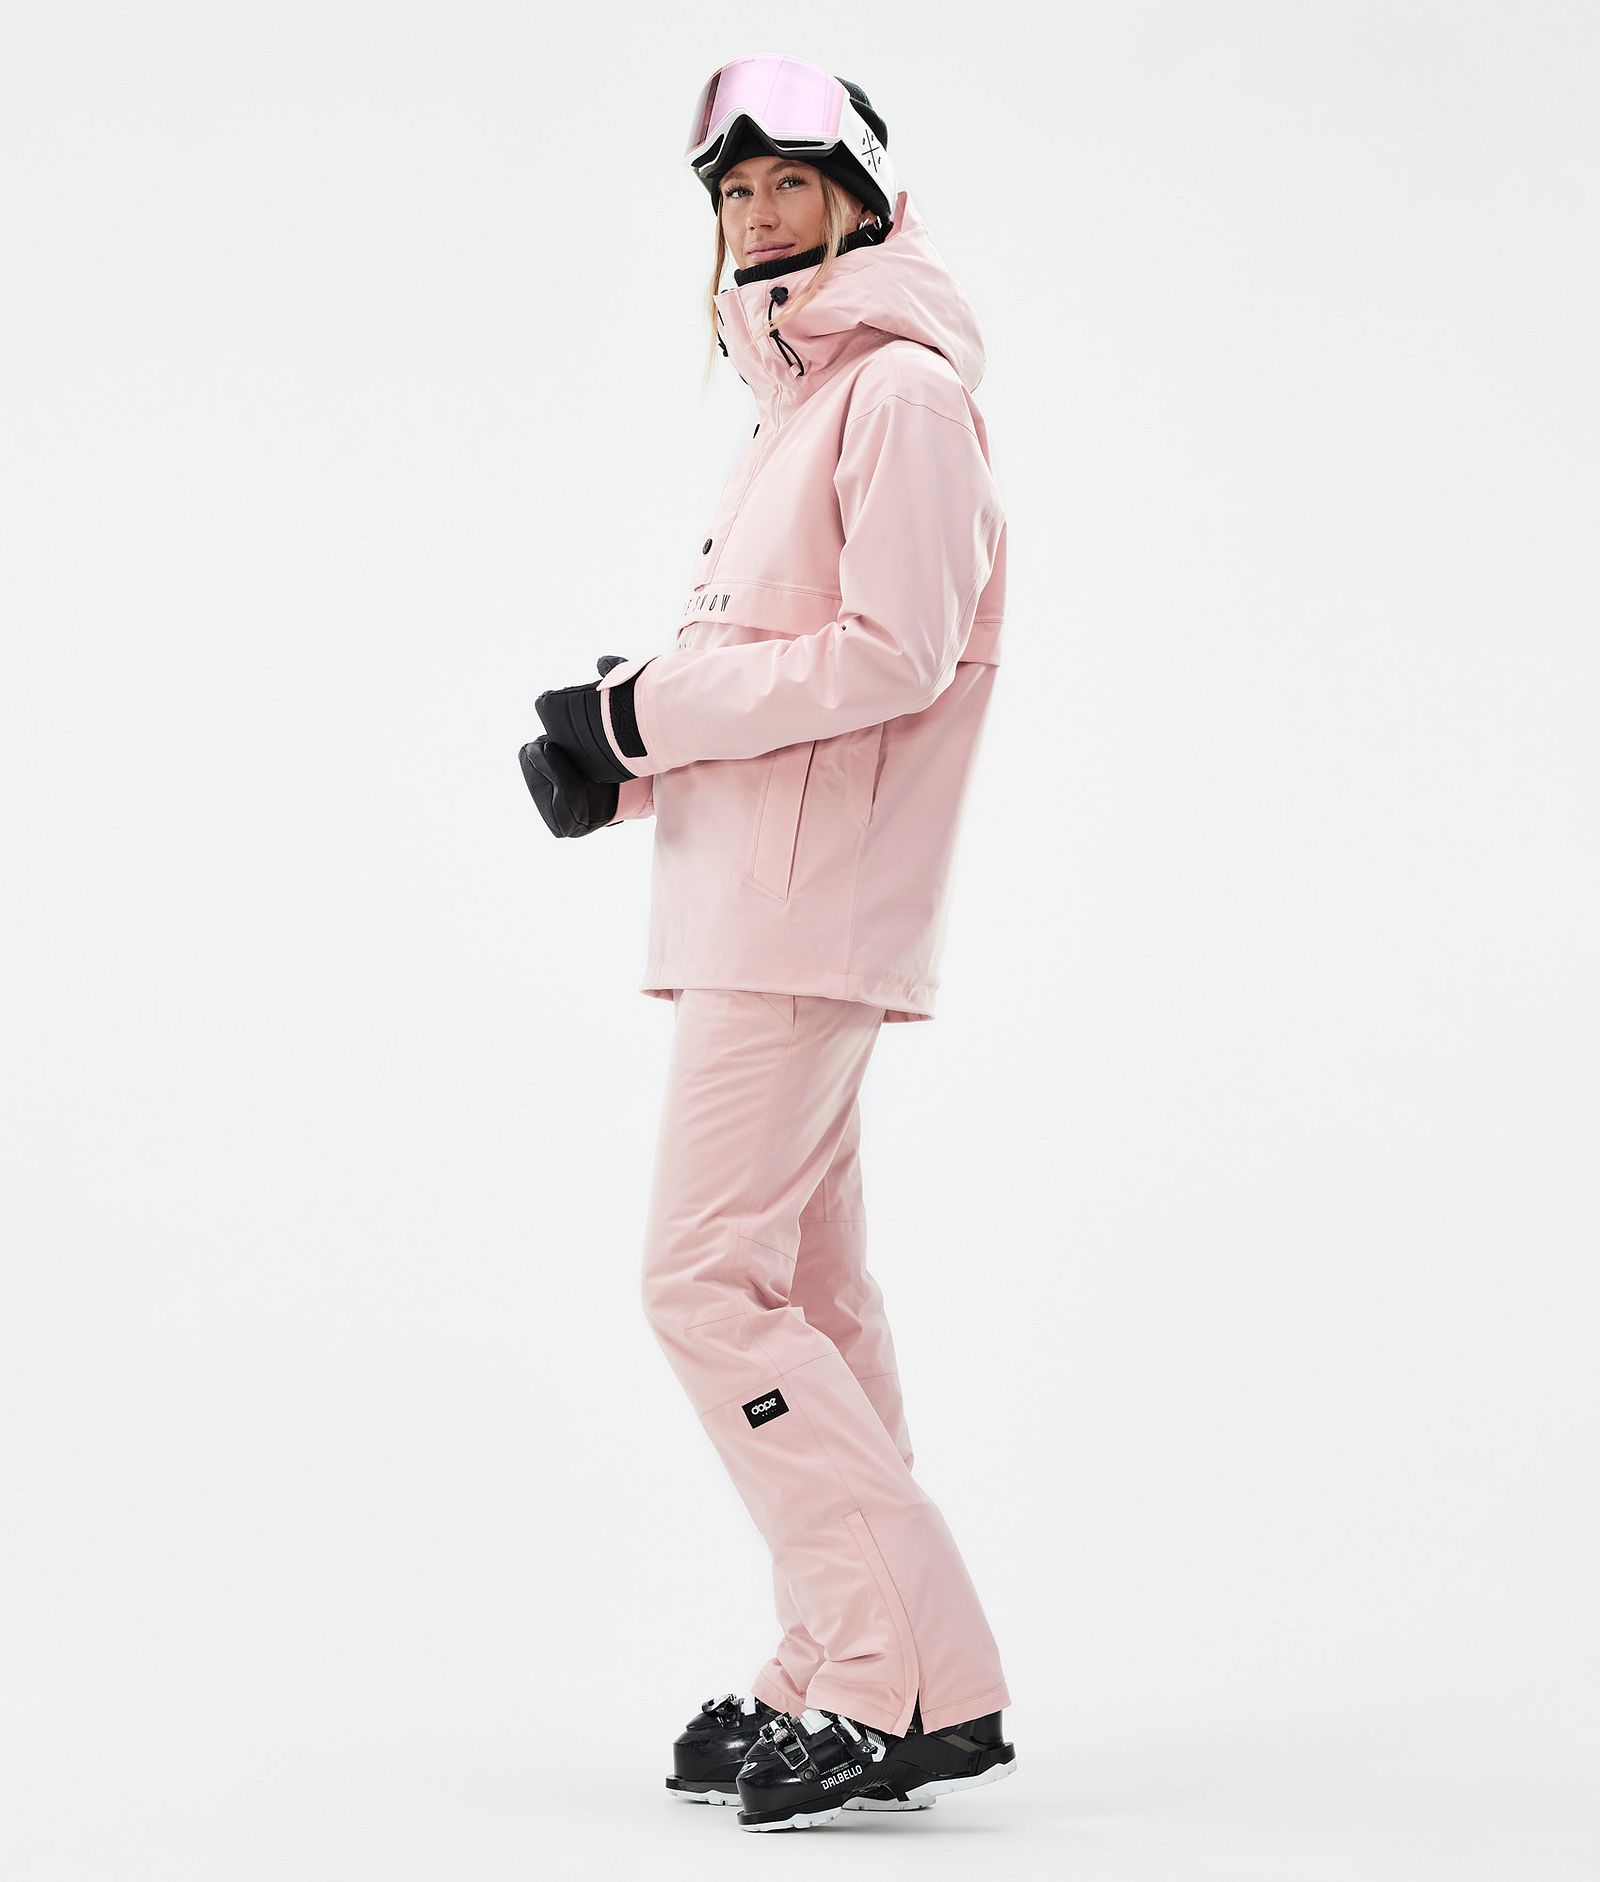 Con W スキーパンツ レディース Soft Pink